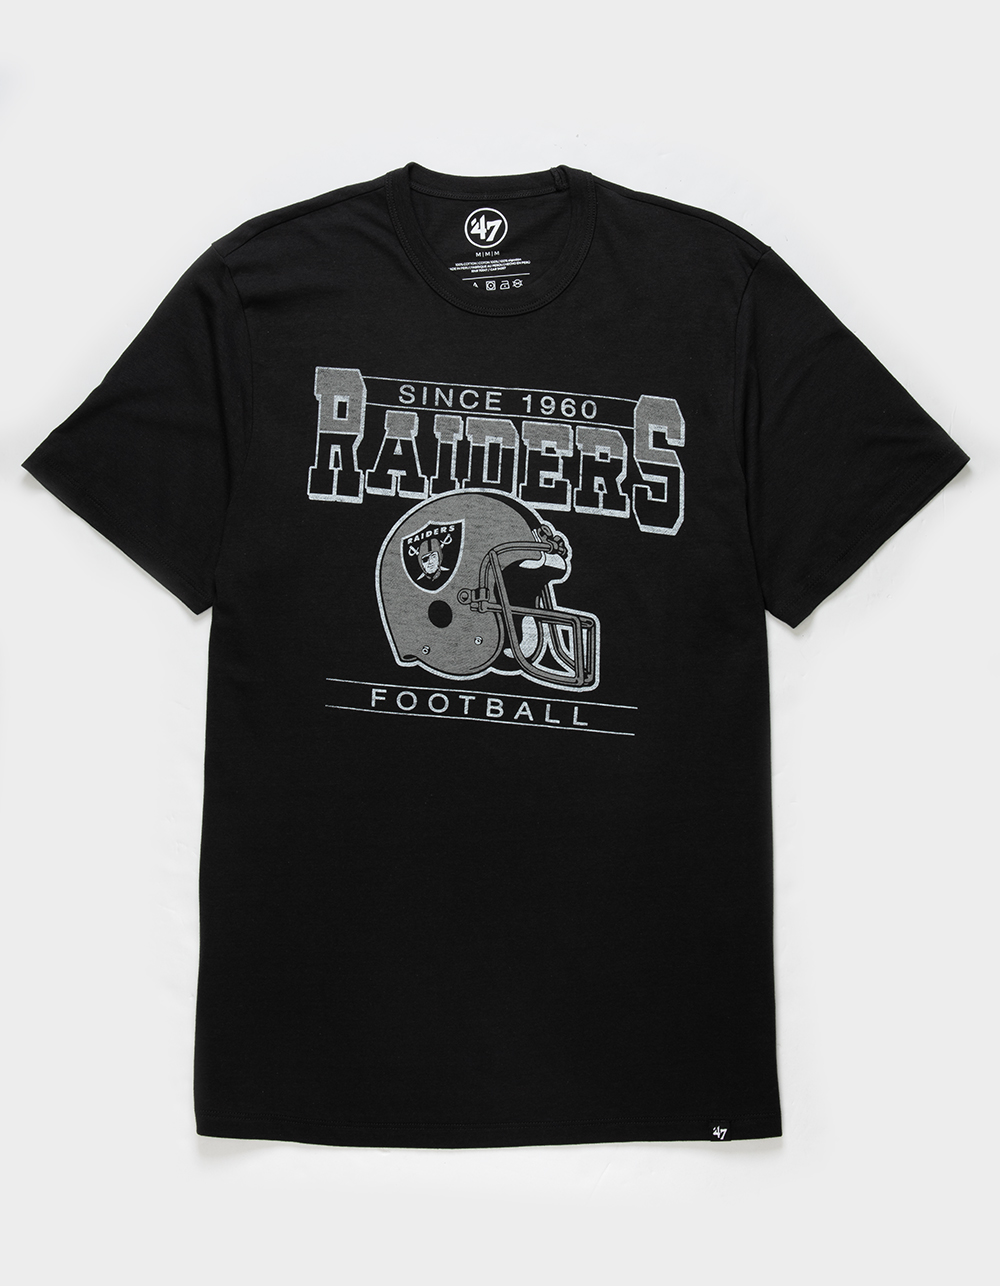 NFL Las Vegas Raiders Men's Quick Tag Athleisure T-Shirt - - ShopStyle